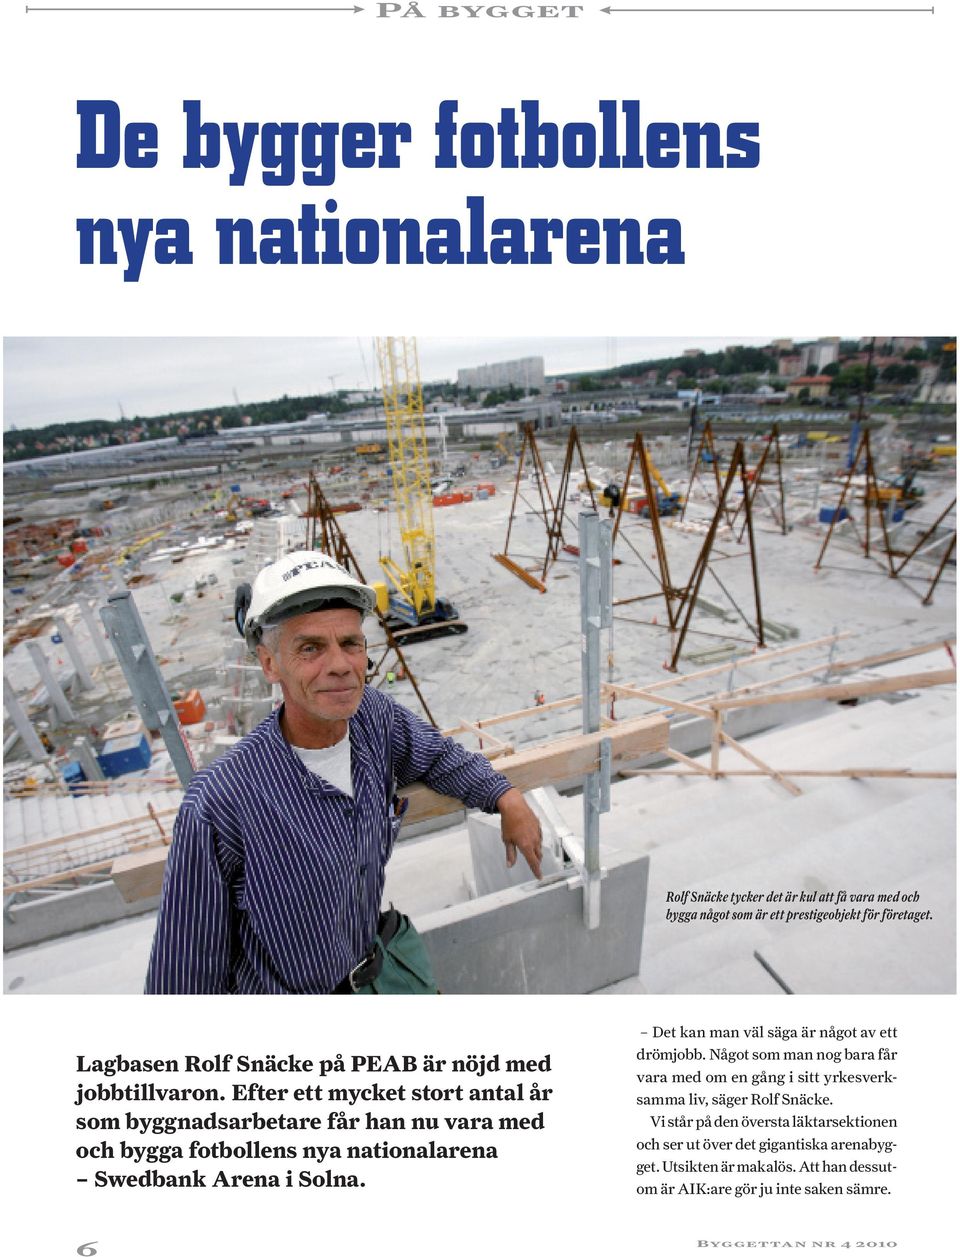 Efter ett mycket stort antal år som byggnadsarbetare får han nu vara med och bygga fotbollens nya nationalarena Swedbank Arena i Solna.